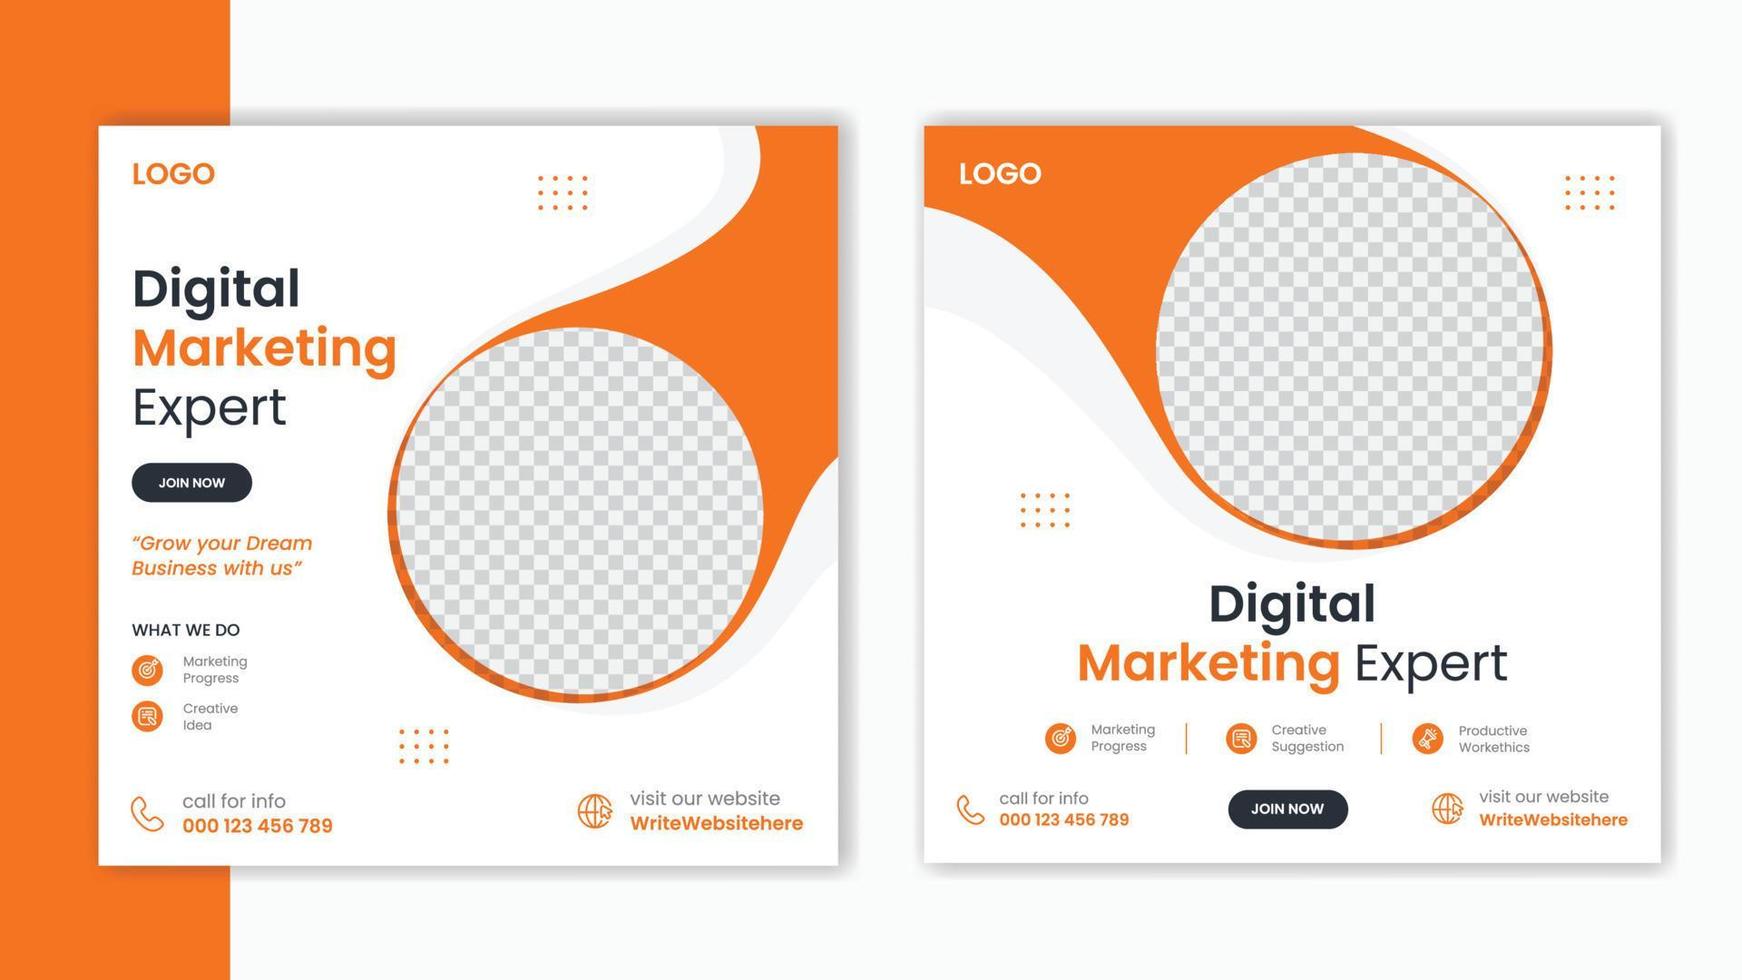 modelo de design de postagem de mídia social laranja corporativa, layout de design de postagem de marketing de negócios, pacote de postagem de perfil da empresa vetor